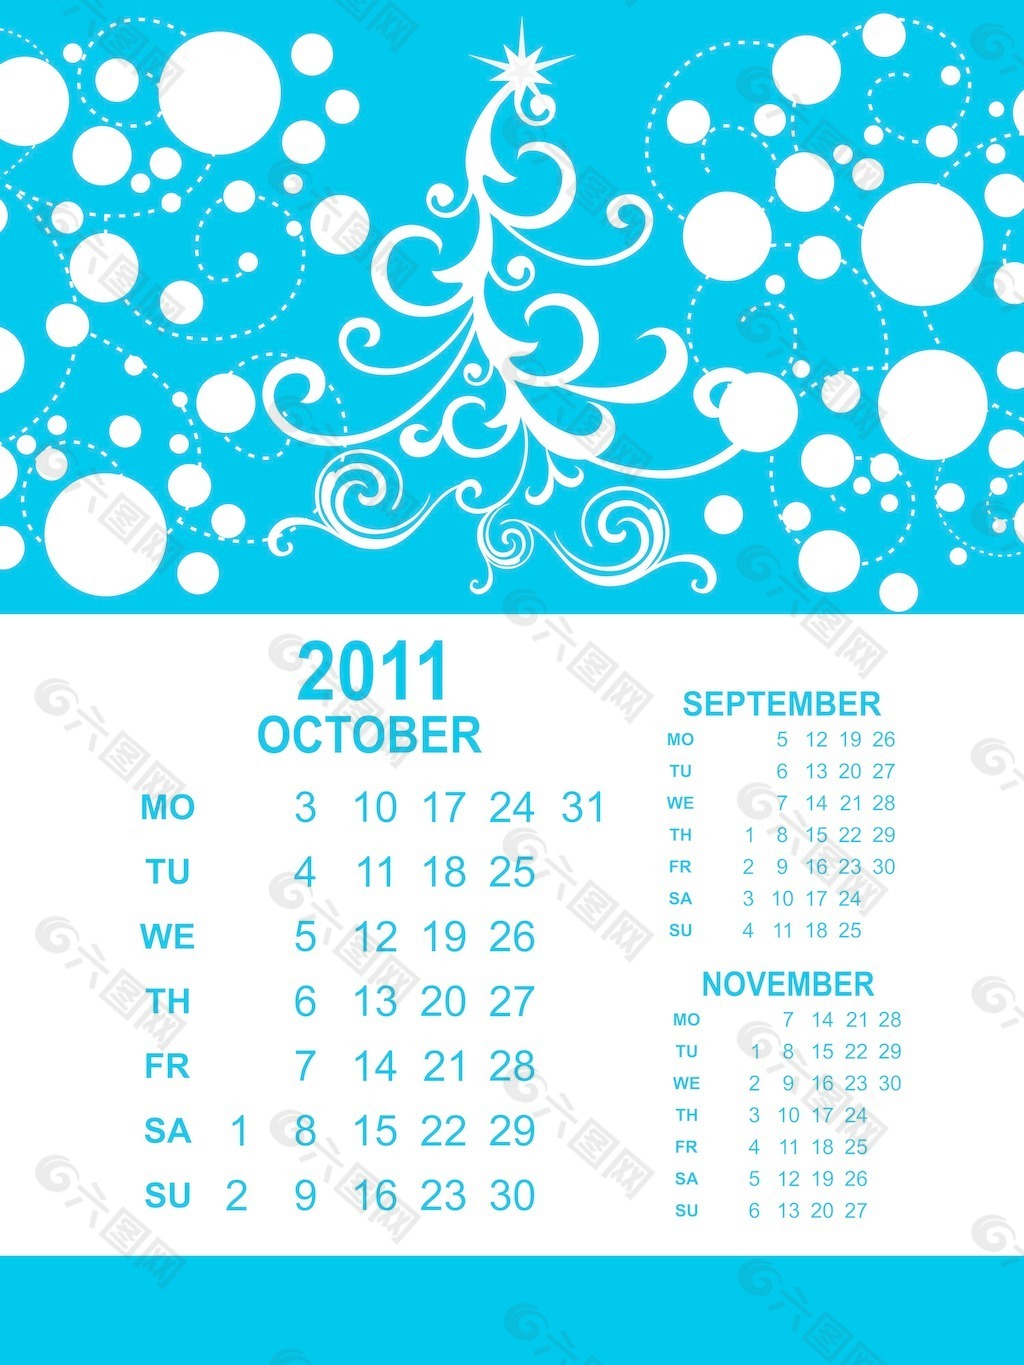 2011有创意的作品日历